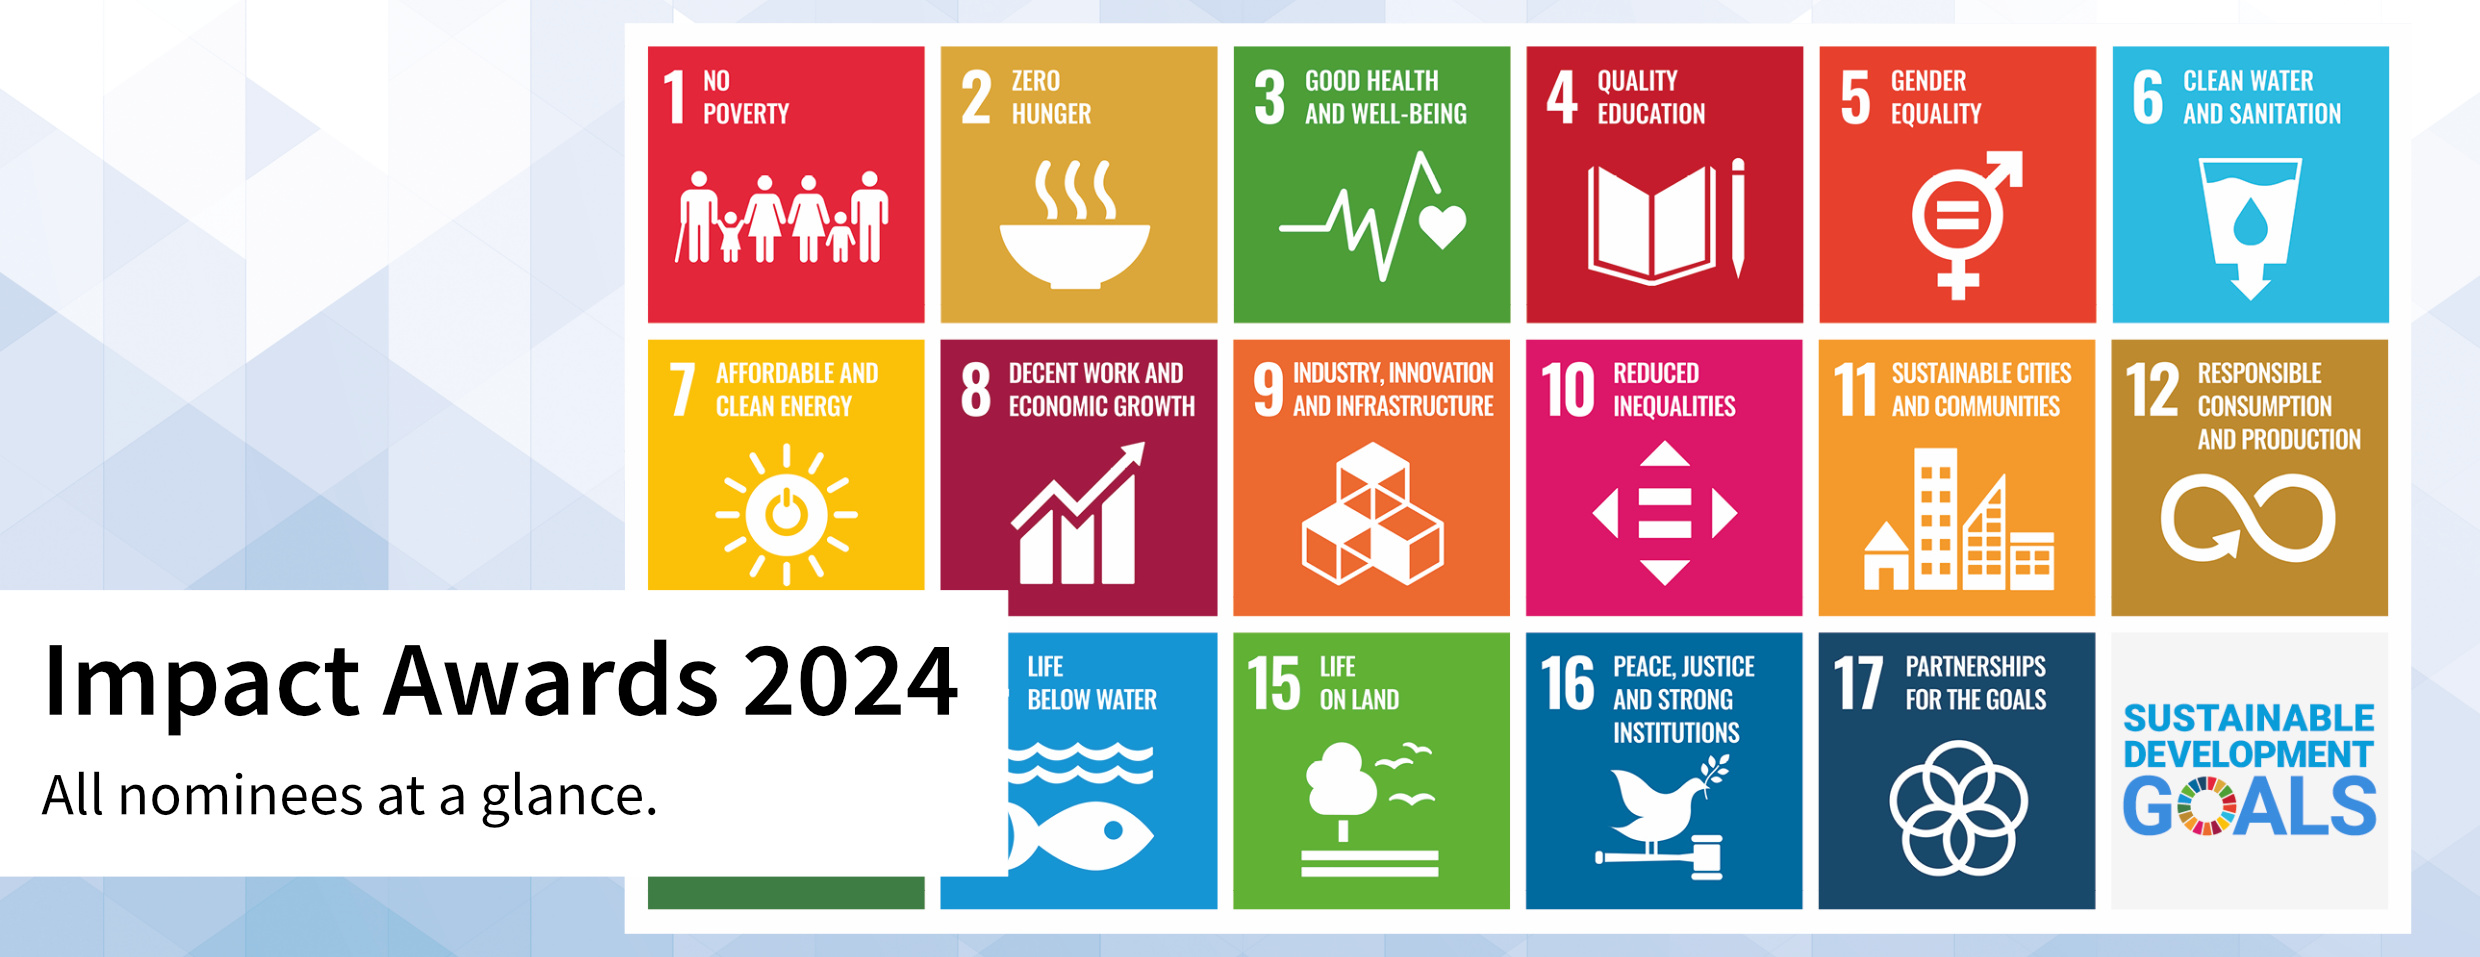 SDG Impact Awards 2024_EN